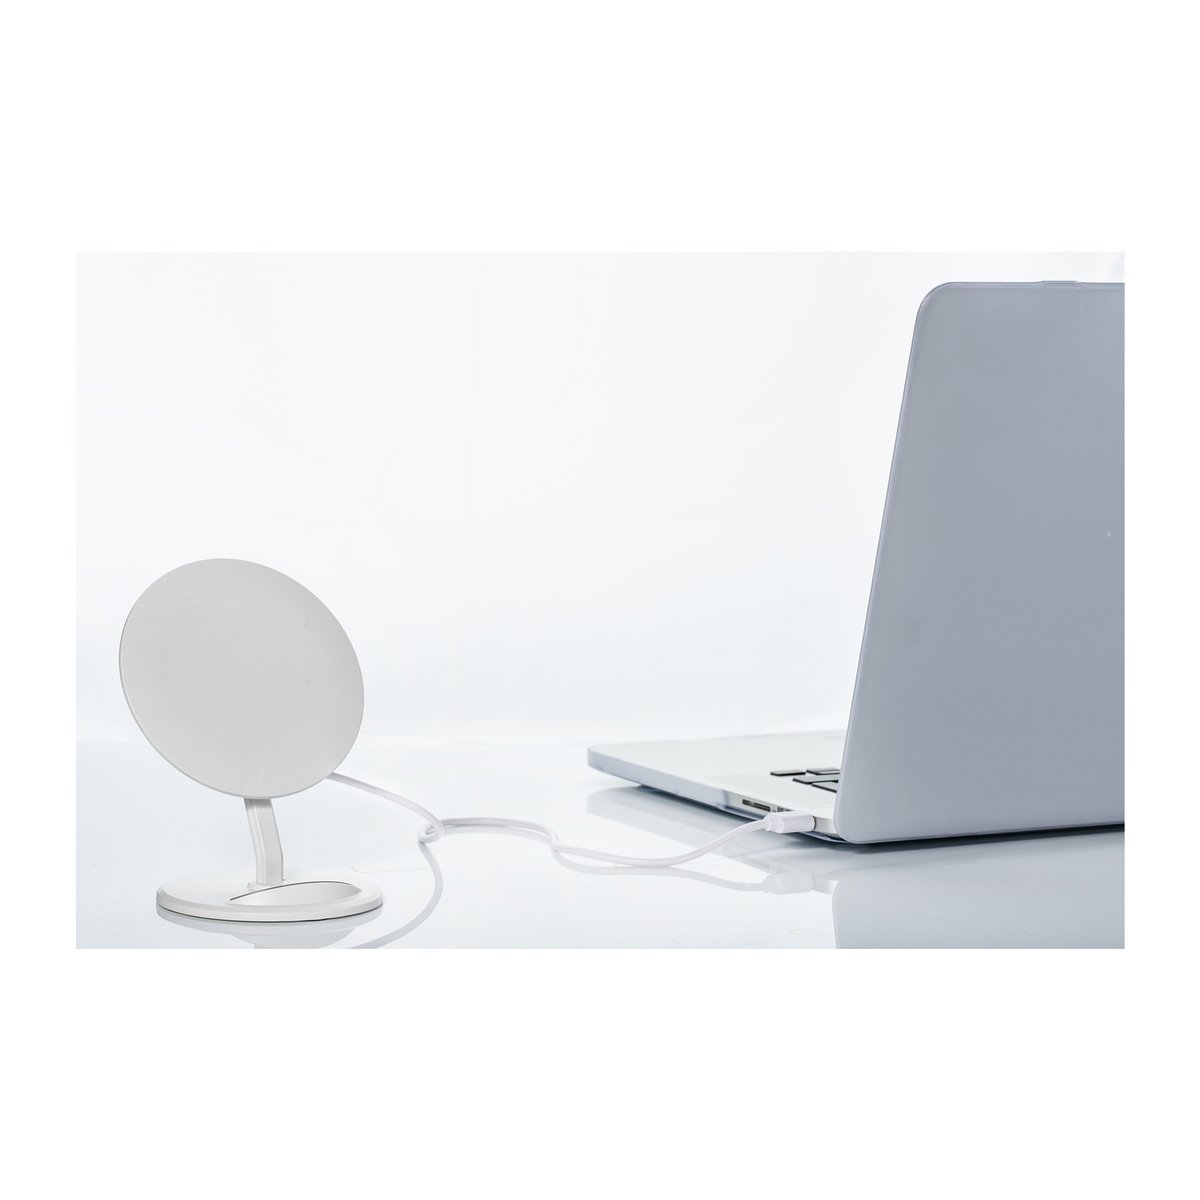 Wireless charging stand REEVES-VENICE white 5 Watt